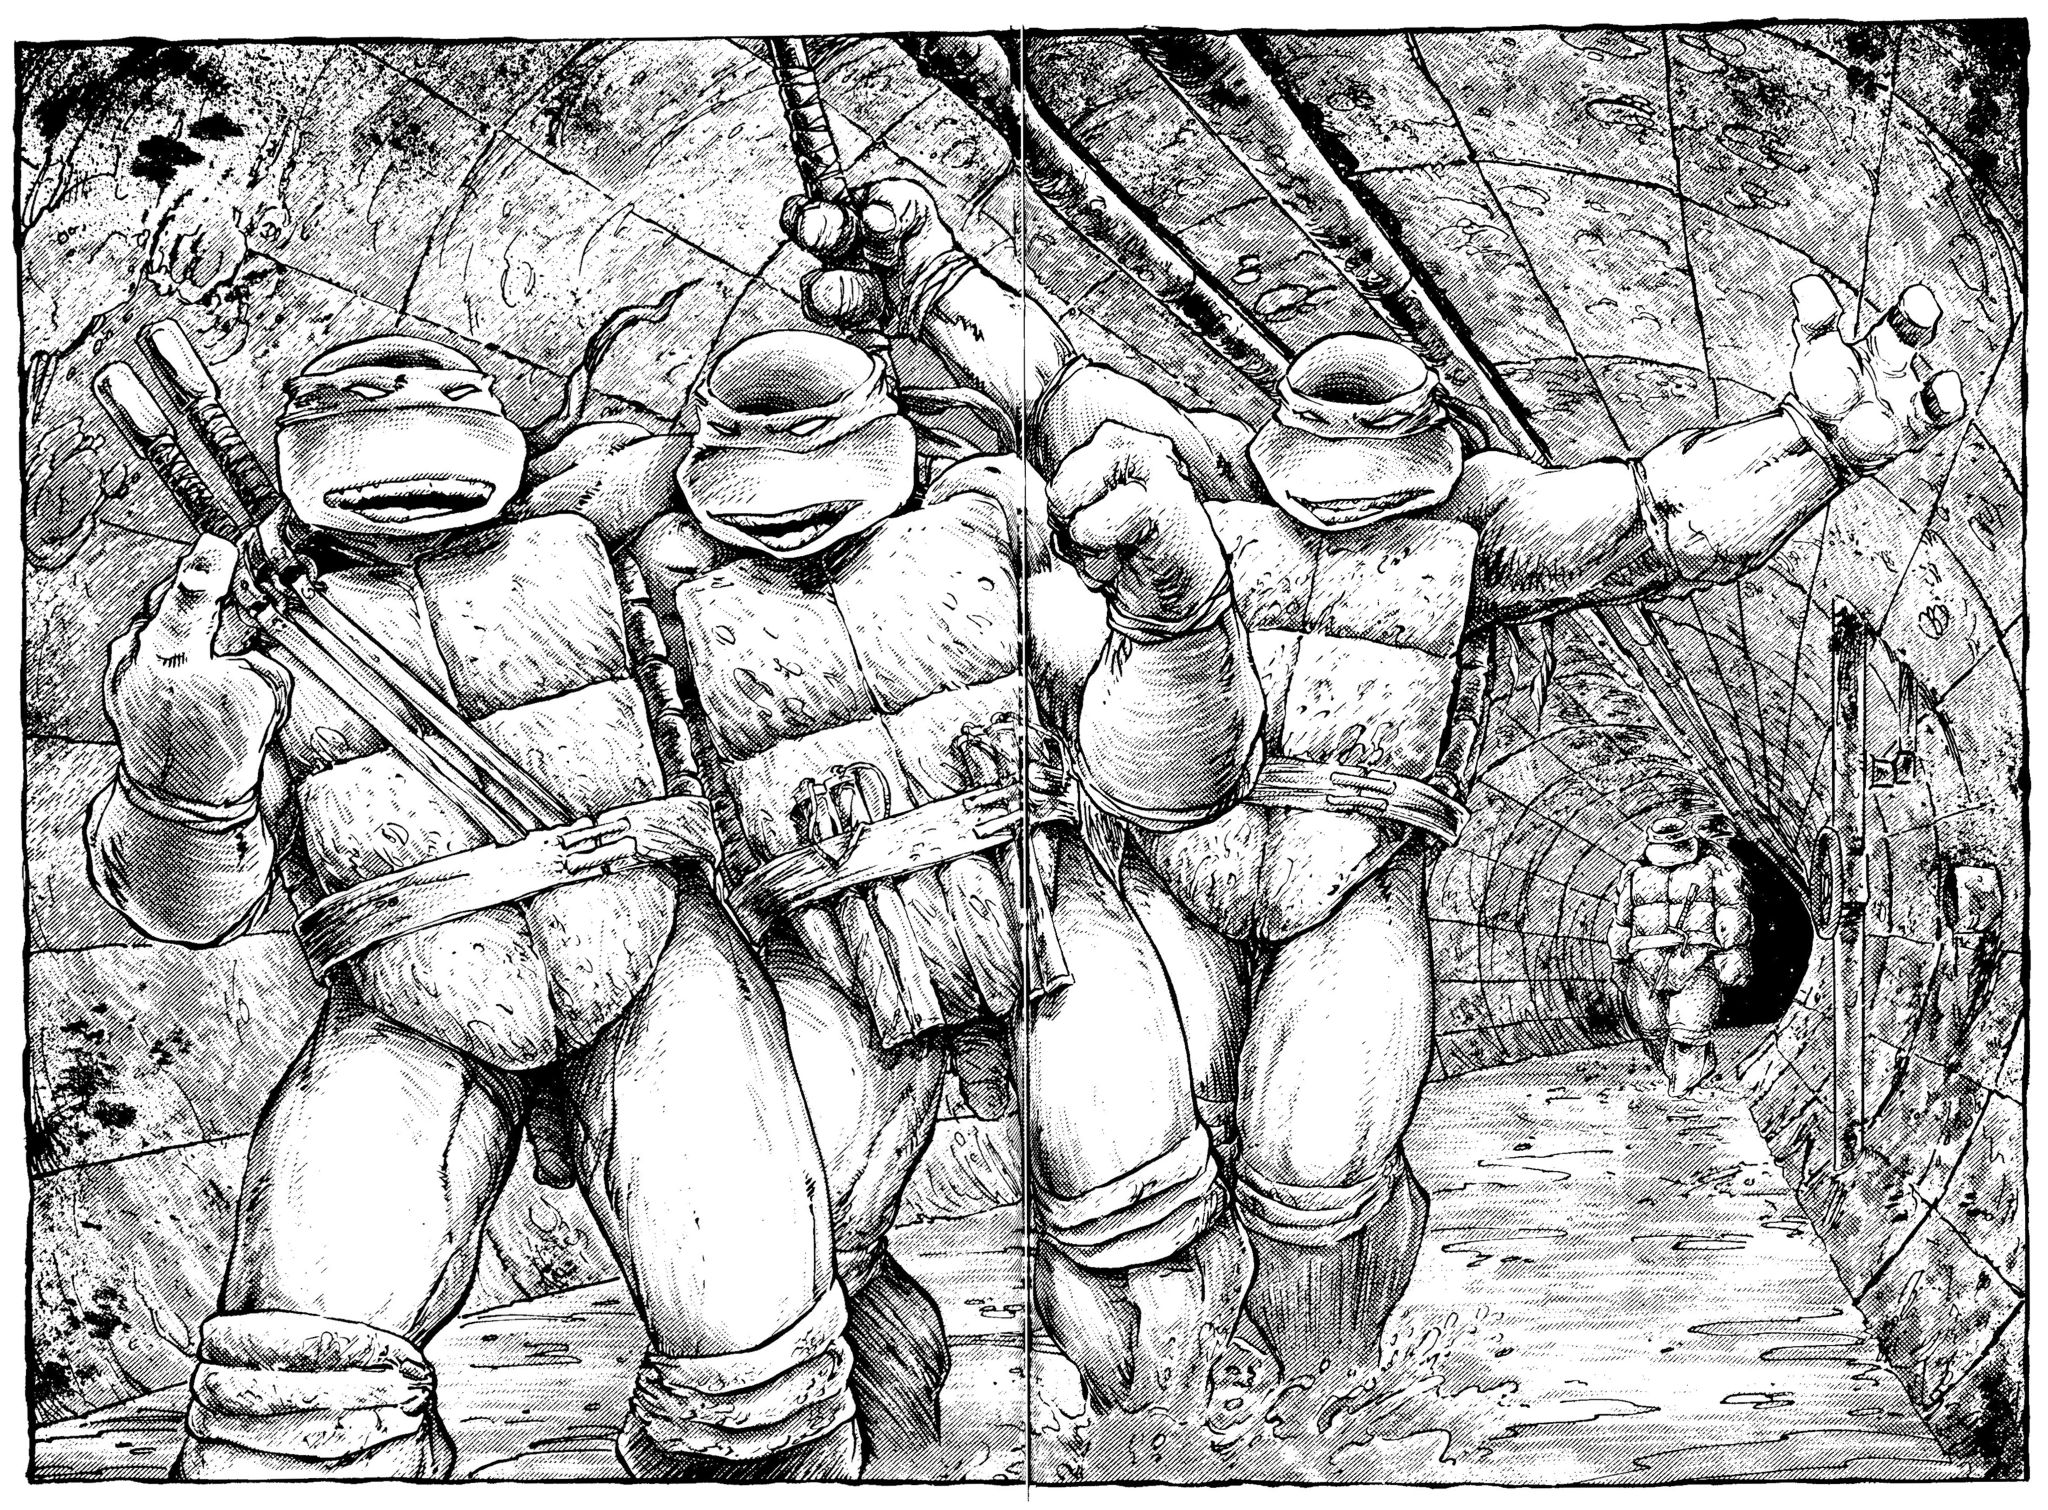 Read online Teenage Mutant Ninja Turtles: The Movie comic -  Issue # Full - 10